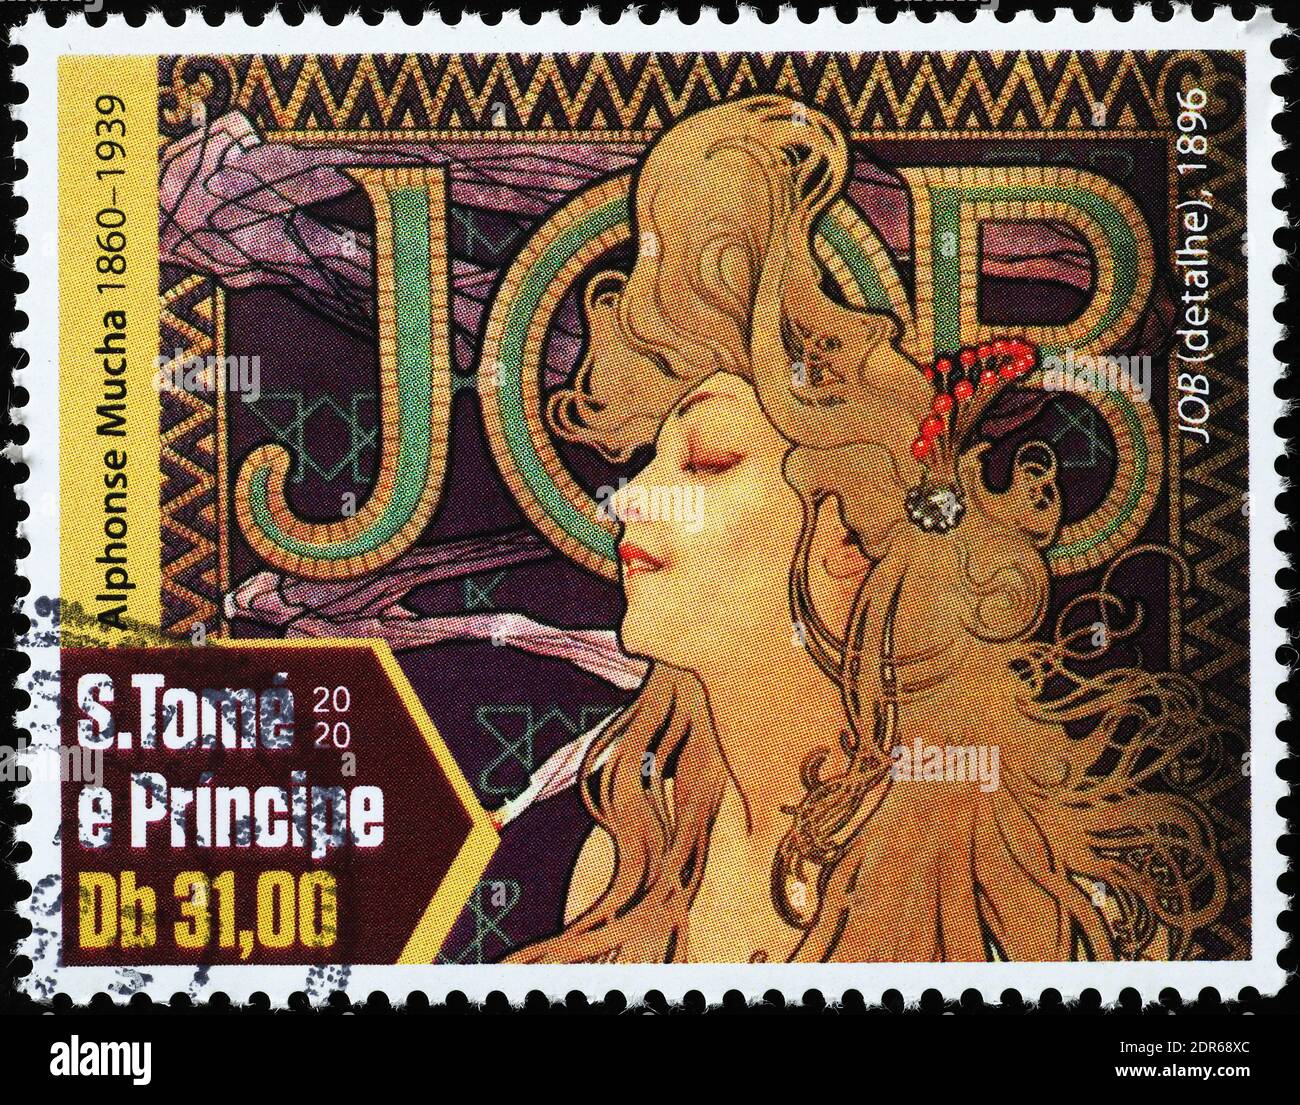 Publicité peinte par Alfons Mucha sur timbre-poste Banque D'Images